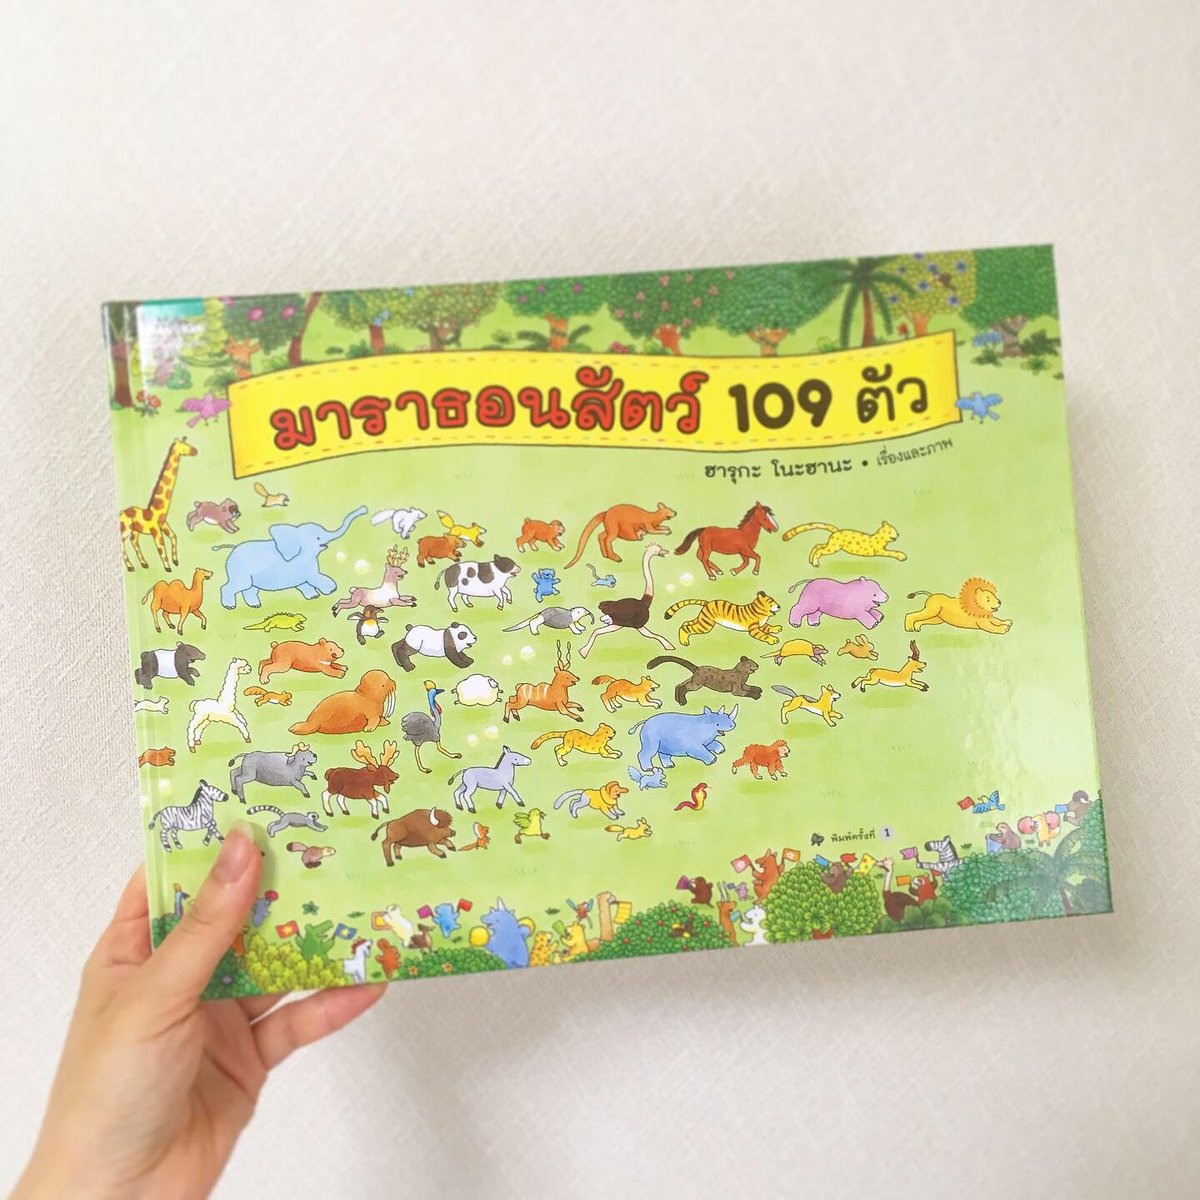 มาราธอนสัตว์ 109 ตัว
『109ひきのどうぶつマラソン』タイ語版が出版されました? 